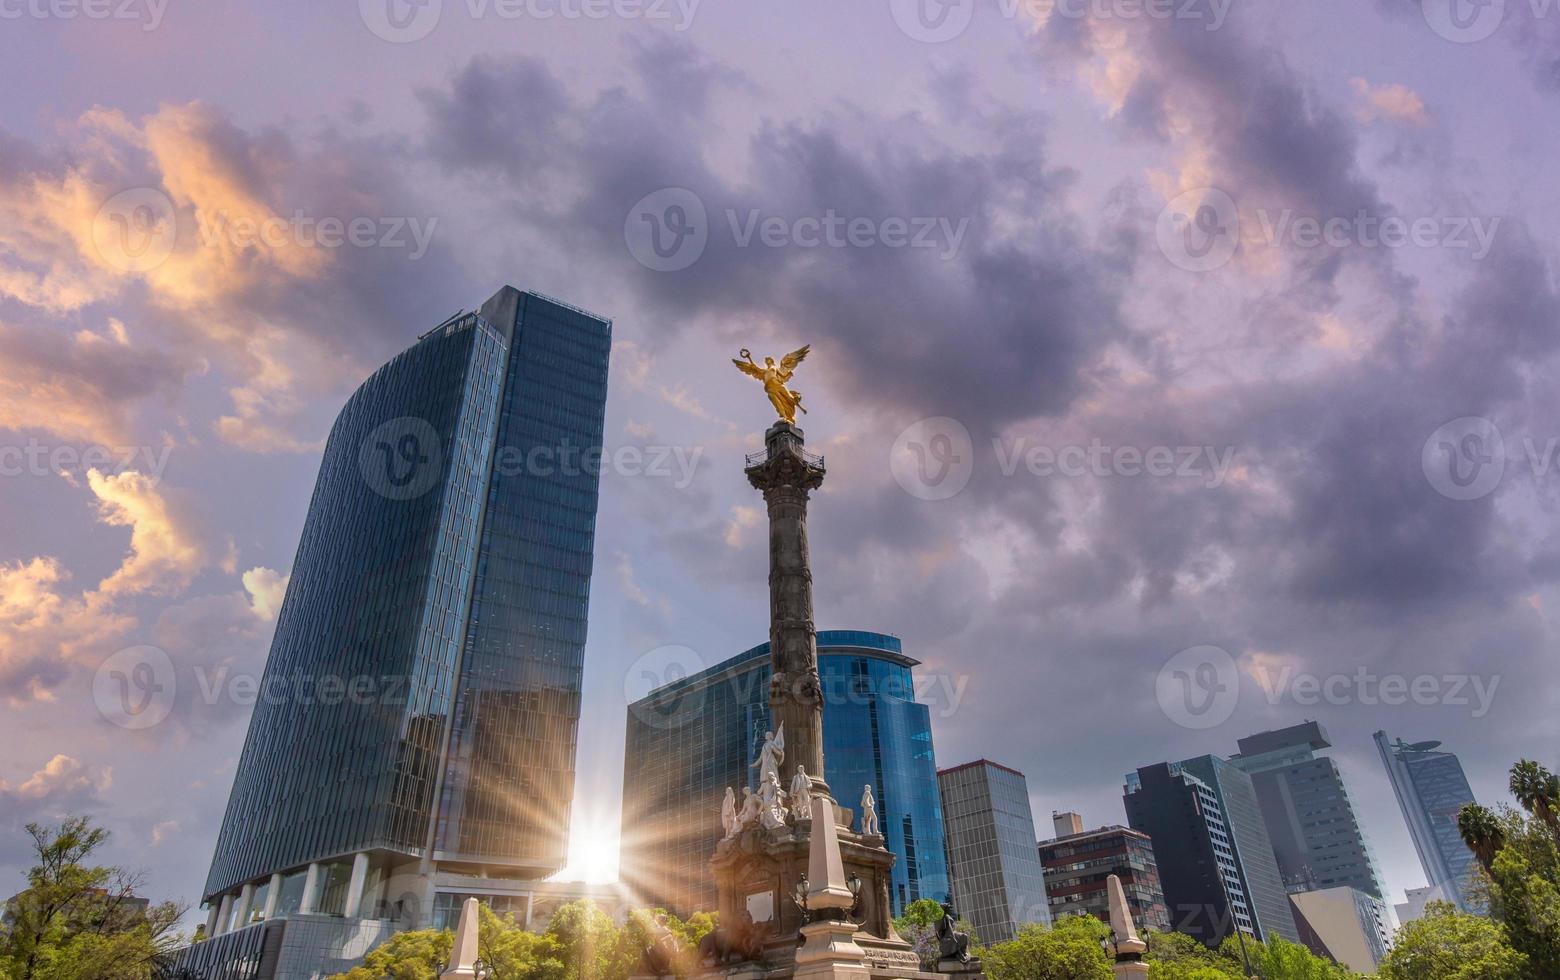 engel van onafhankelijkheidsmonument gelegen aan de reforma-straat nabij het historische centrum van mexico-stad foto